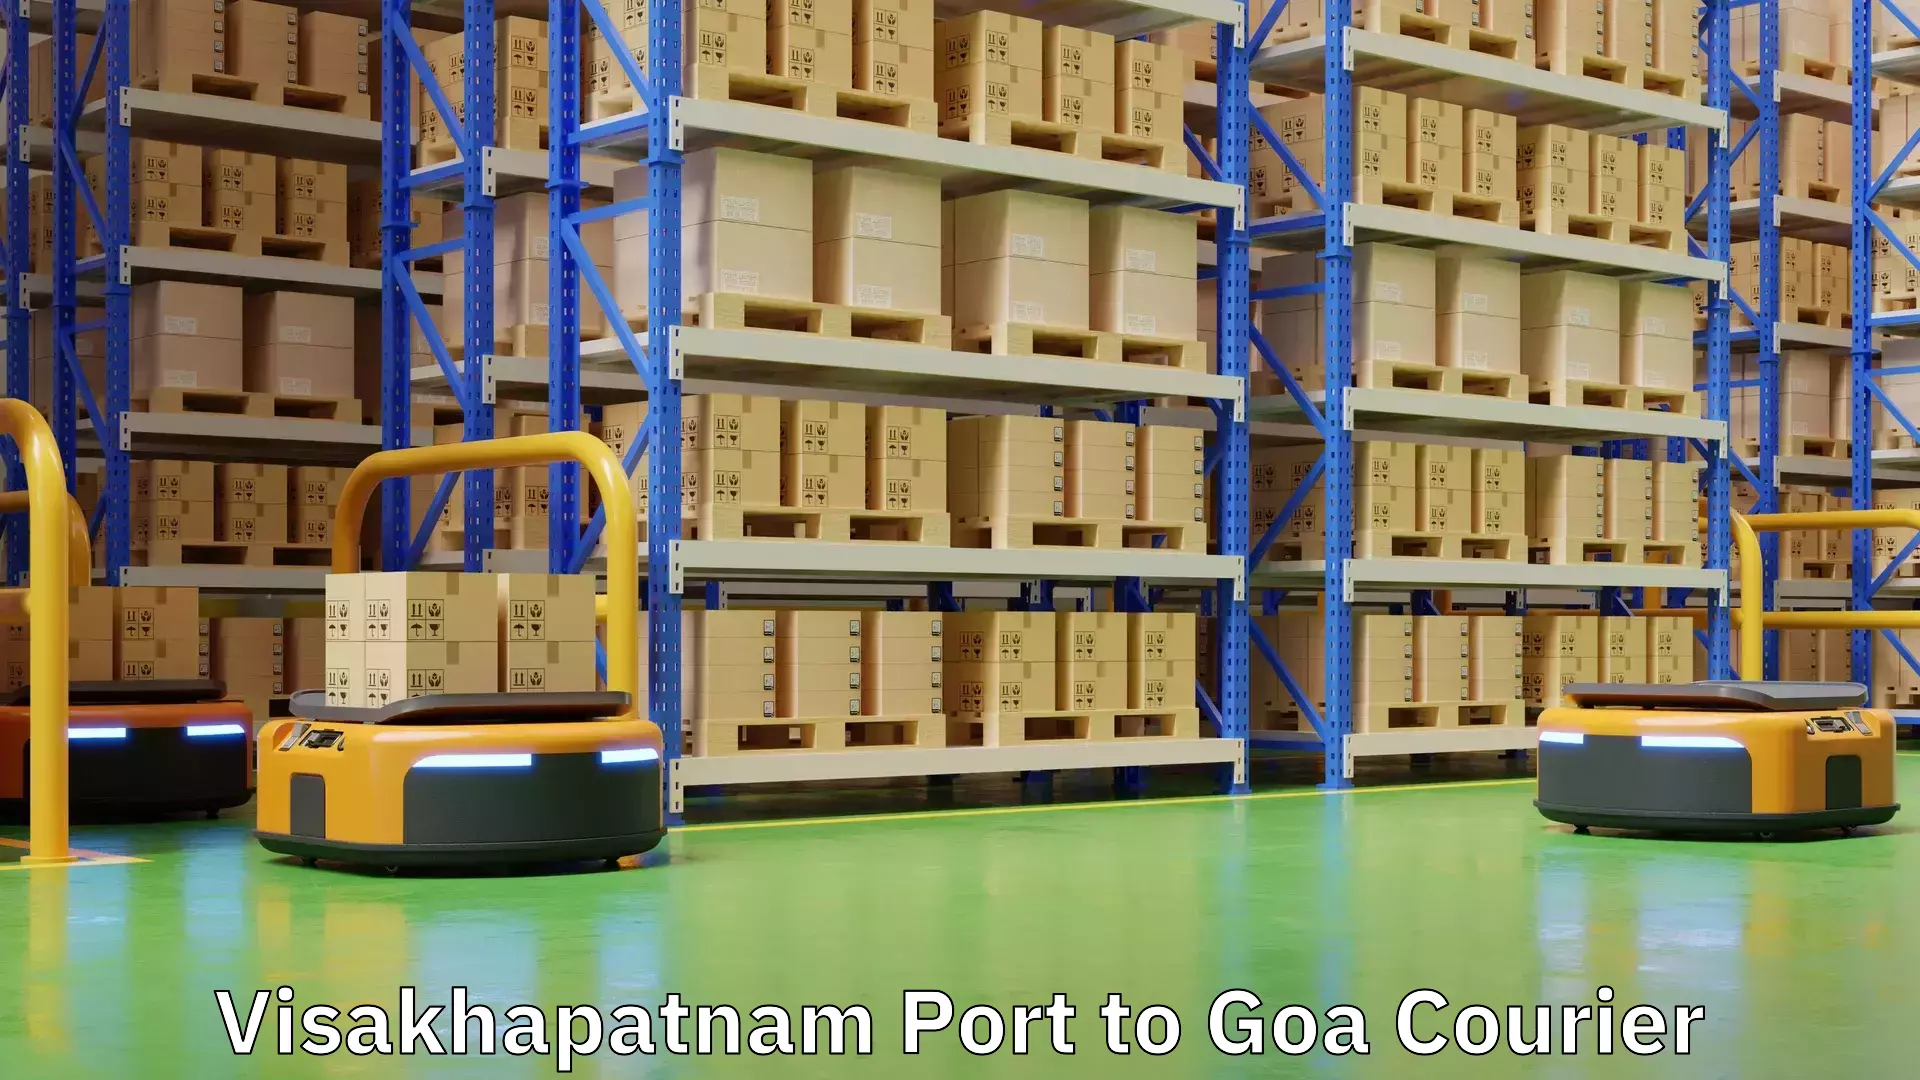 Global parcel delivery Visakhapatnam Port to Goa